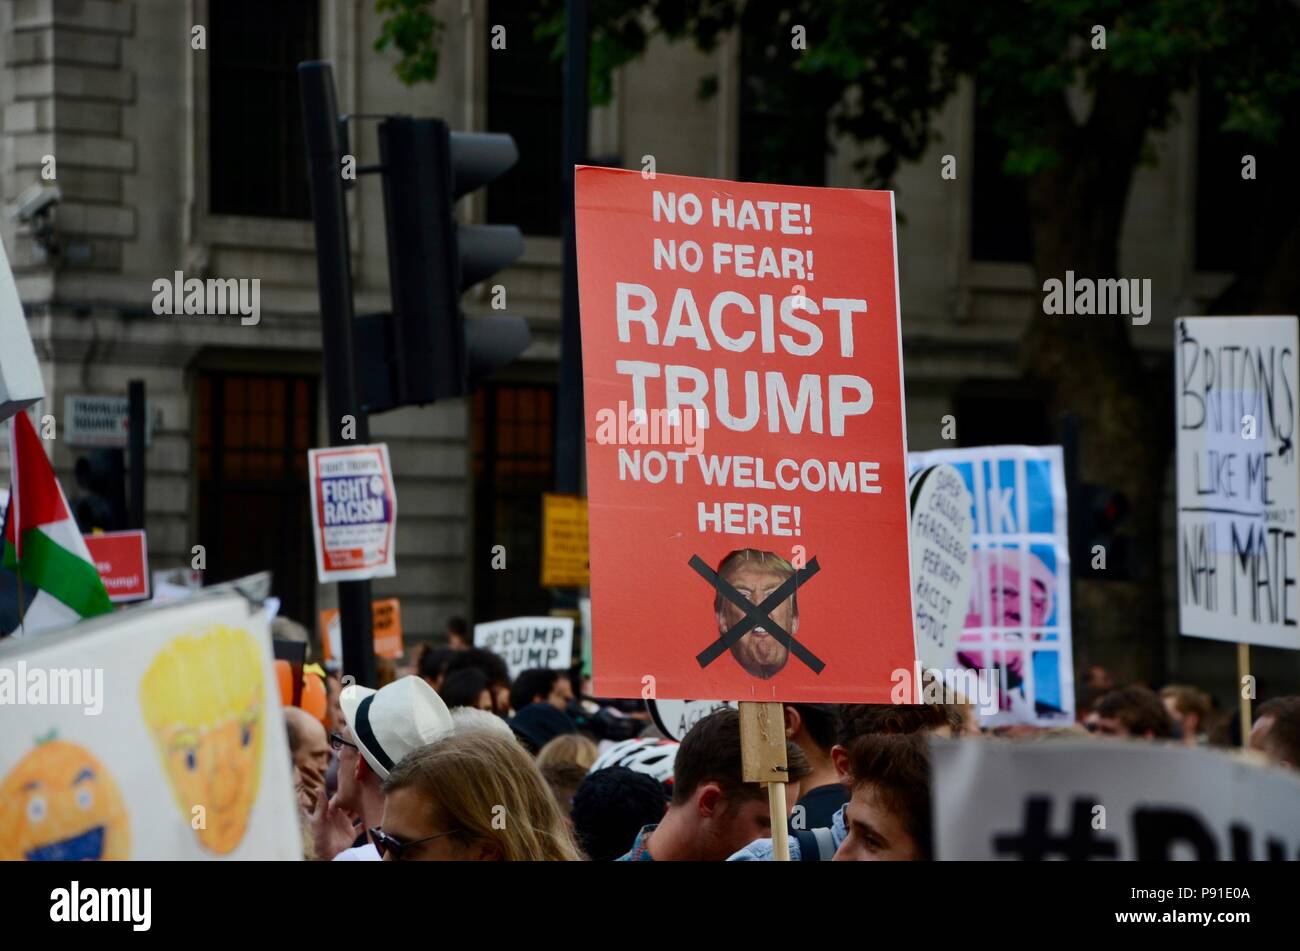 Londra, UK, 13 luglio 2018. anti trump proteste e cartelloni in Trafalgar Square Londra Regno Unito 13 luglio 2018 razzista non trump benvenuto qui Credito: simon leigh/Alamy Live News Foto Stock